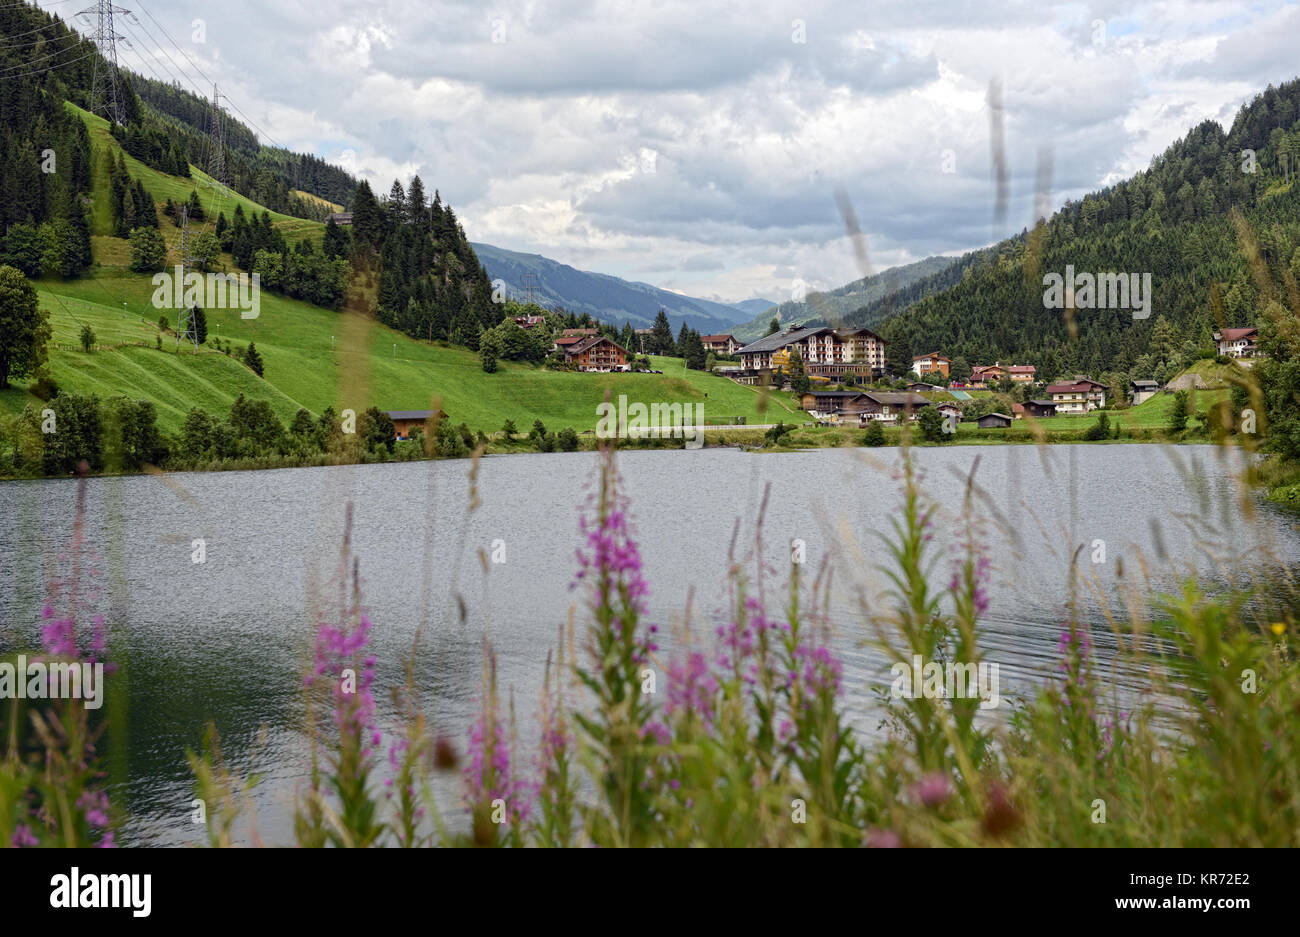 European Alps around village Gerlos in Zillertal valley (Austria). meadows and forests around. Stock Photo